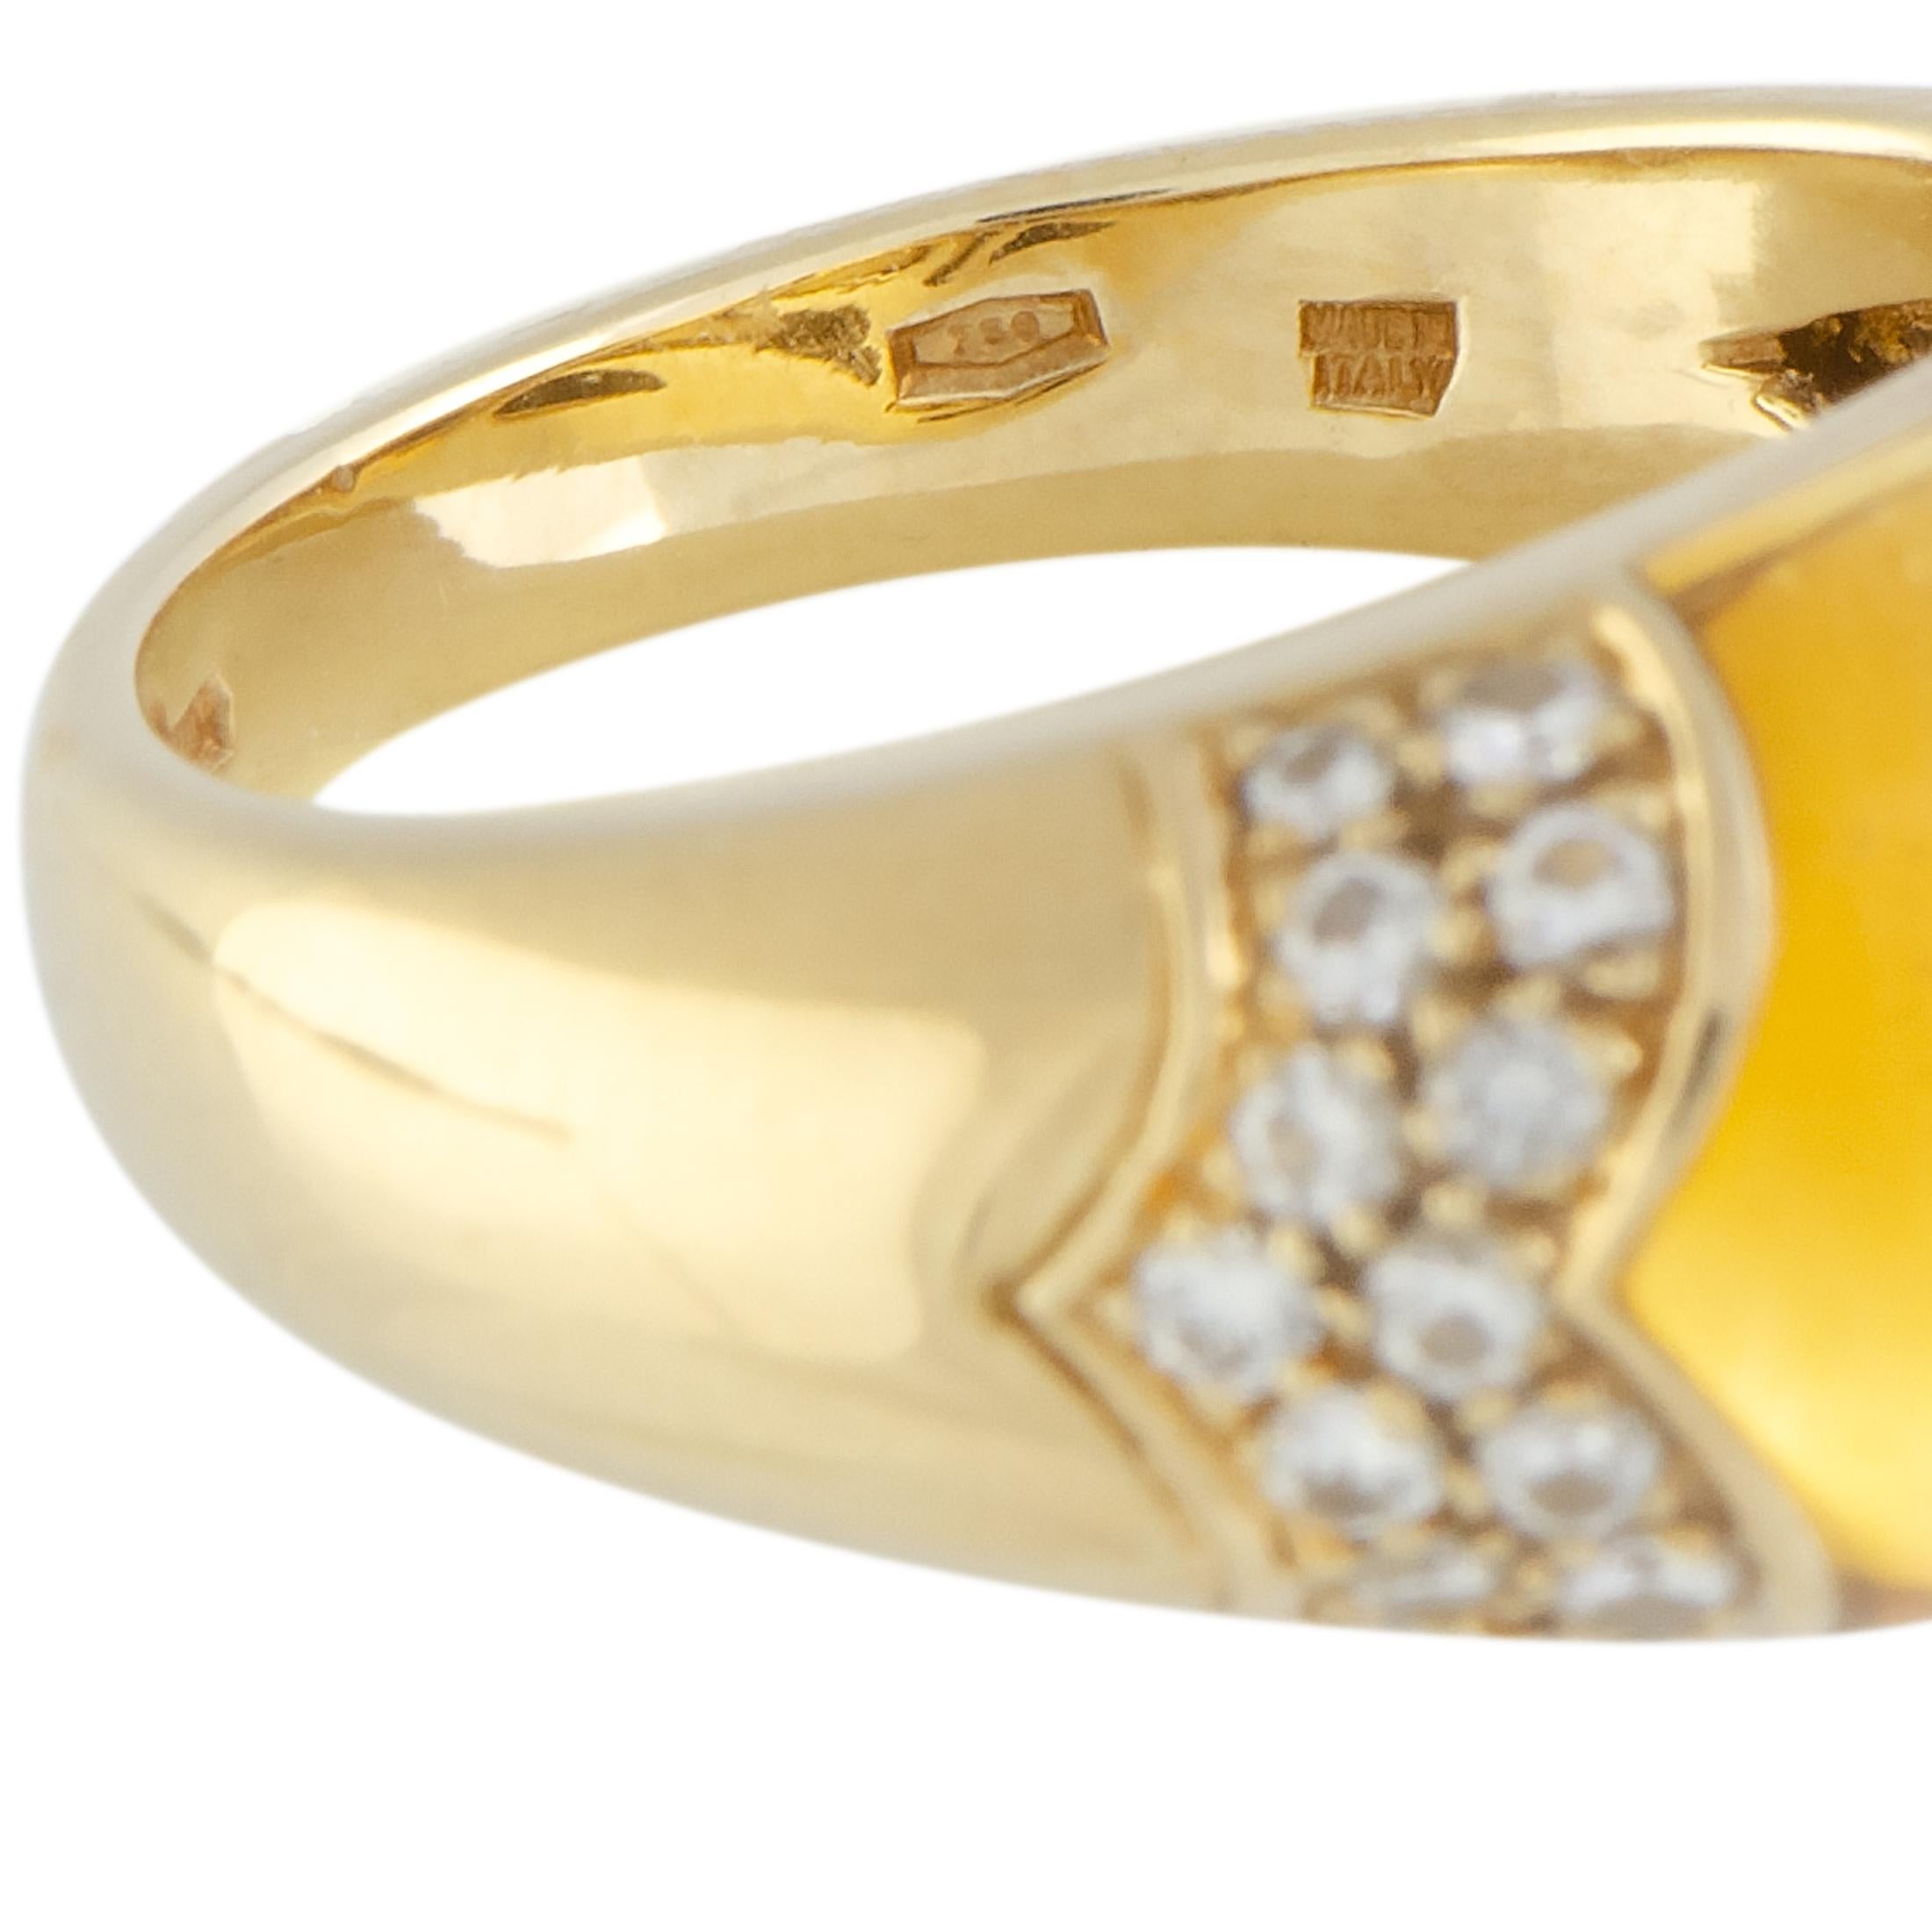 Bvlgari Tronchetto 18 Karat Yellow Gold Diamond and Citrine Ring 1